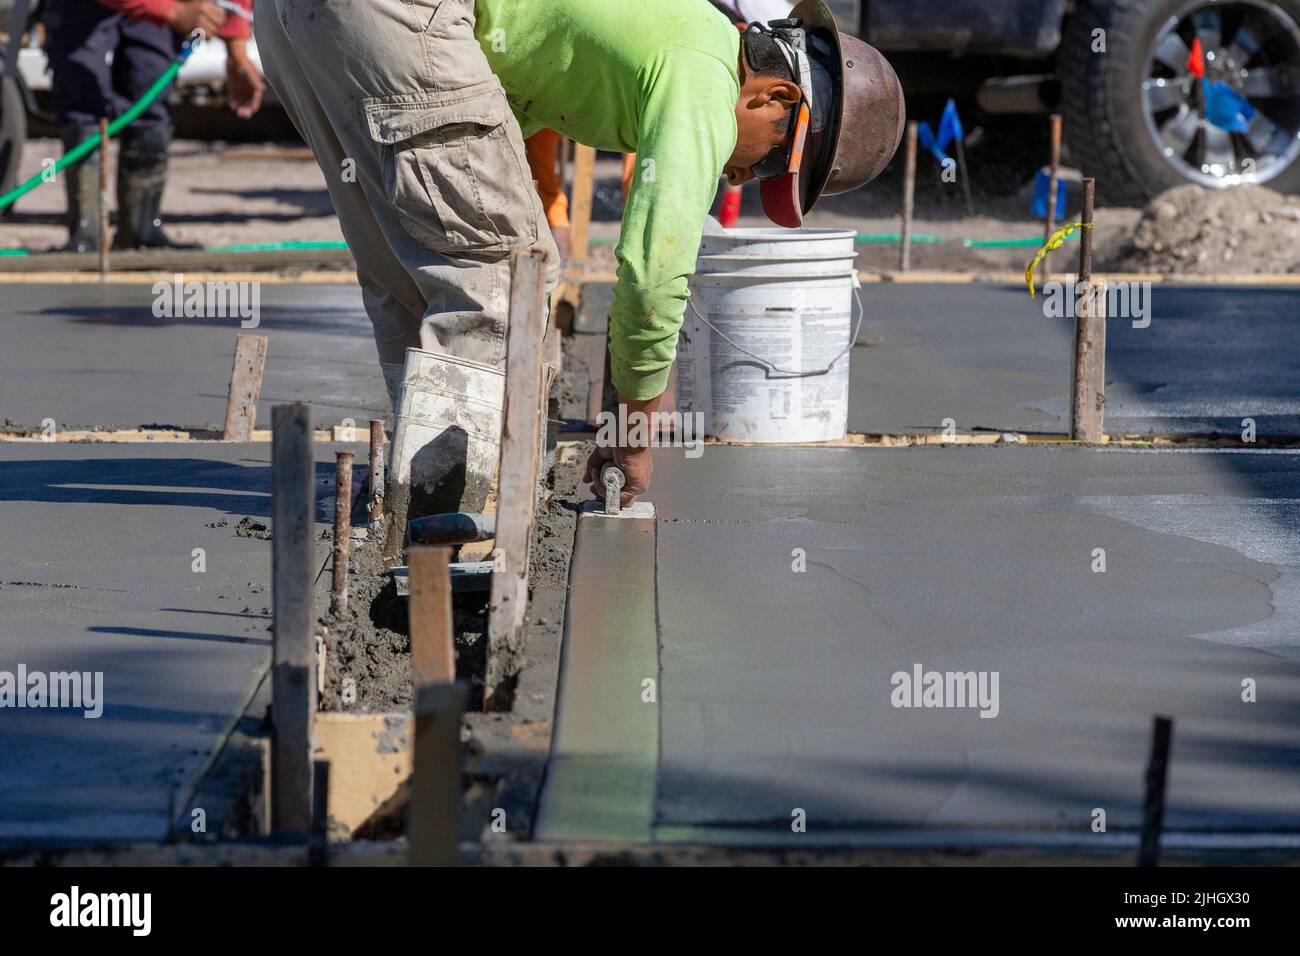 Un ouvrier de la construction utilise une truelle de virage pour terminer le bord d'une gifle de béton fraîchement versée comme une allée. Banque D'Images